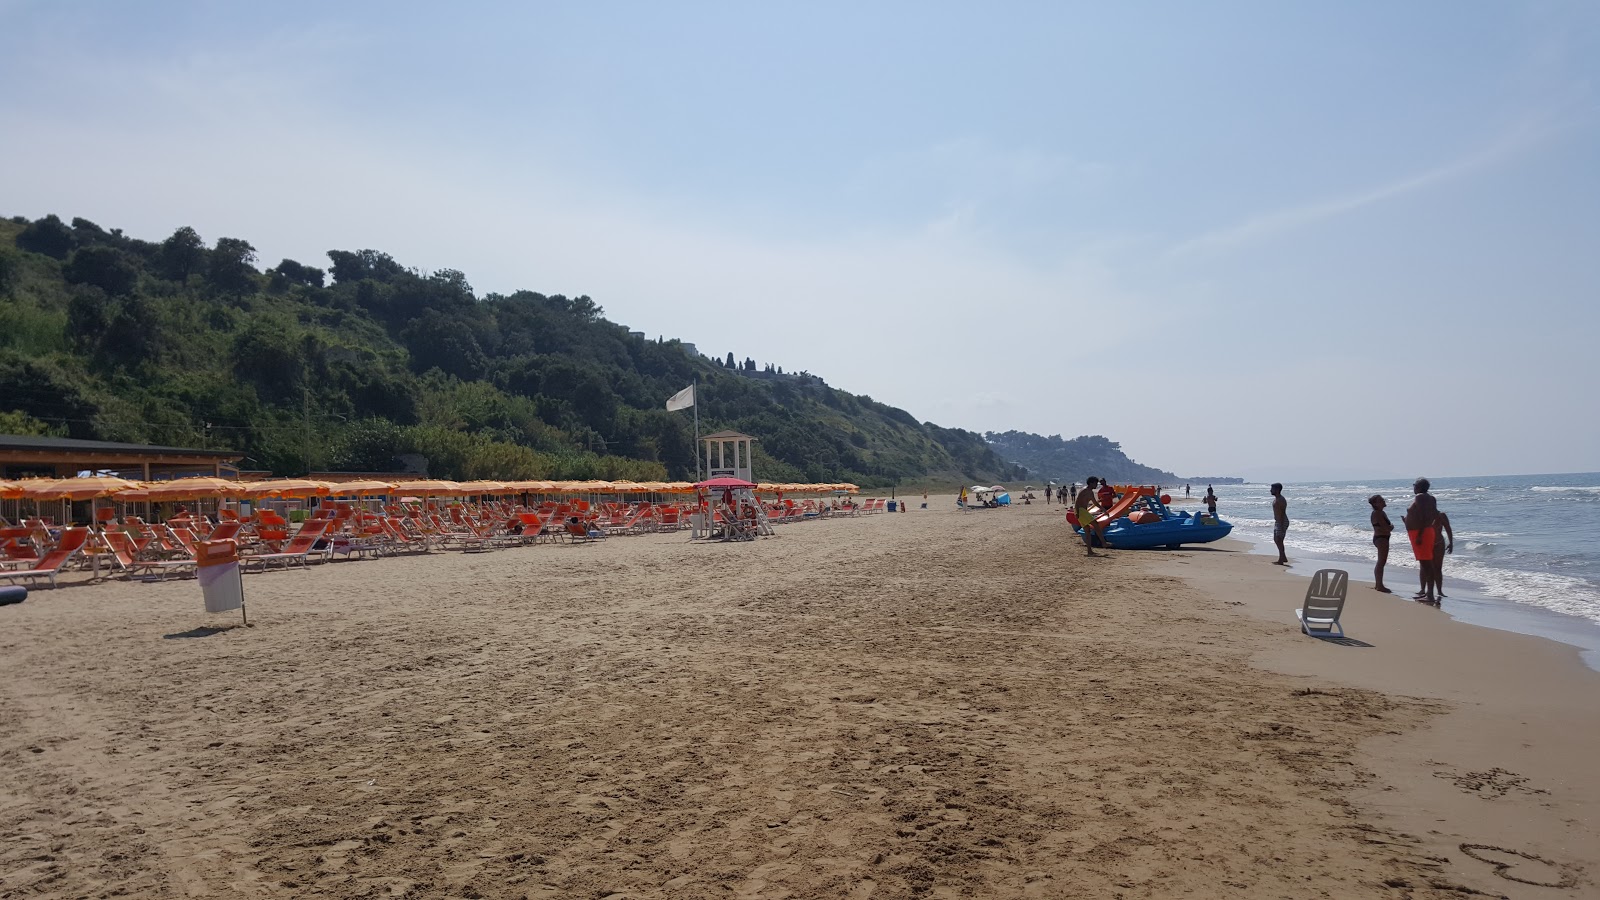 Foto de Spiaggia di Ponente - lugar popular entre los conocedores del relax